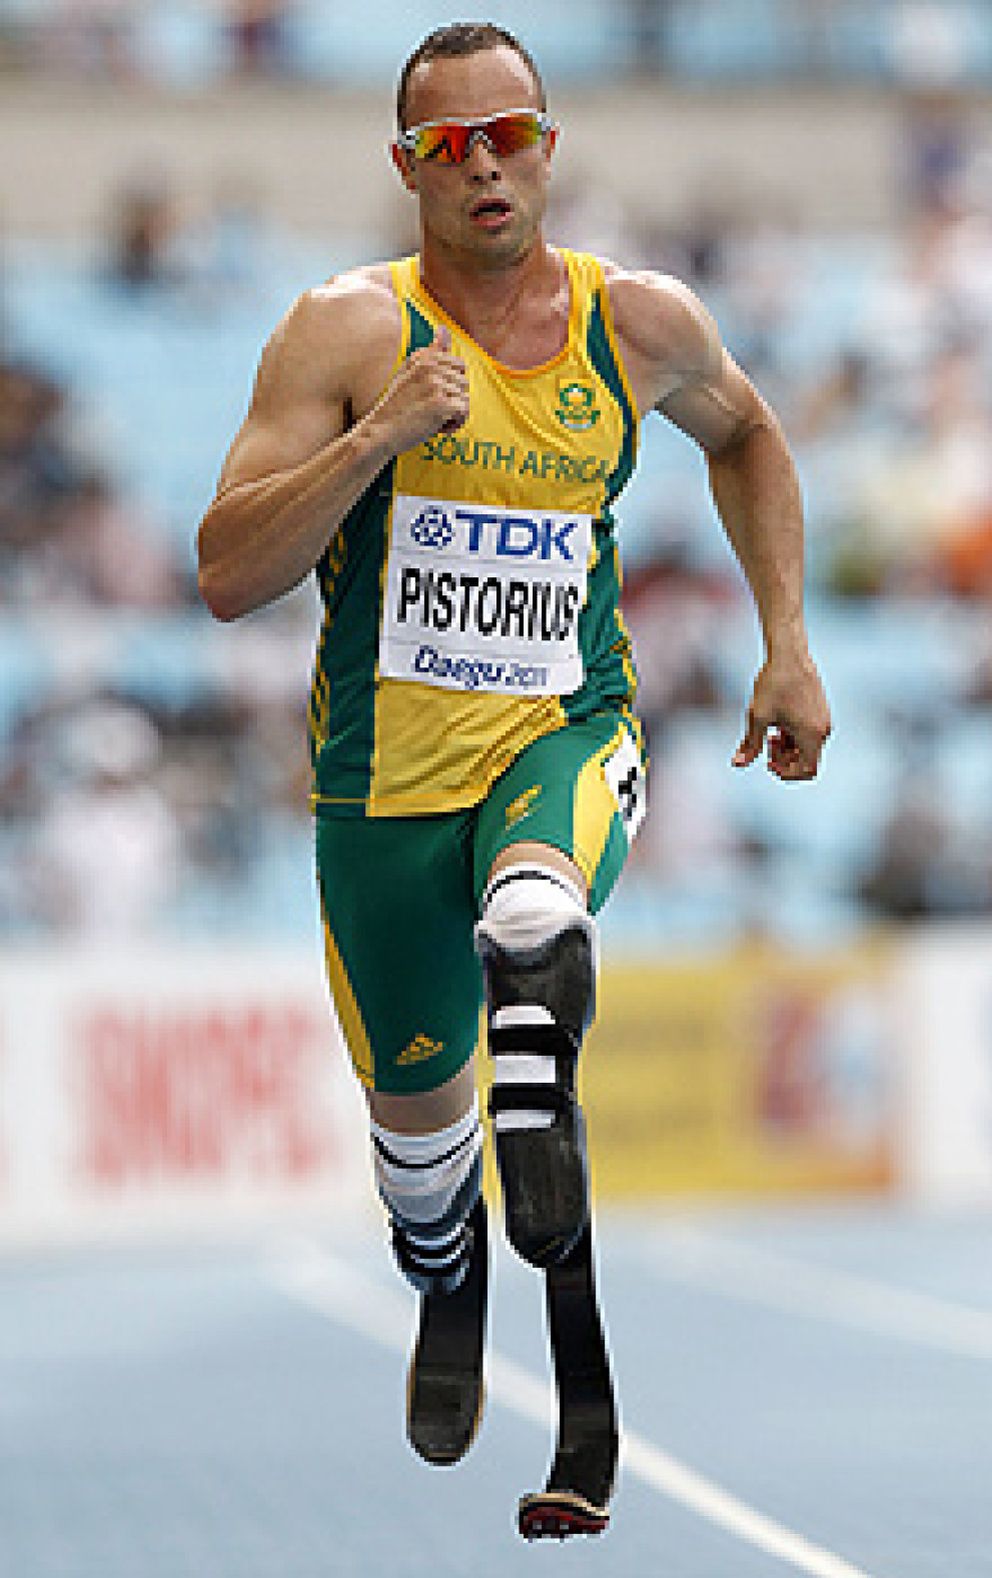 Foto: Pistorius, el velocista con piernas de titanio que estará en Londres 2012